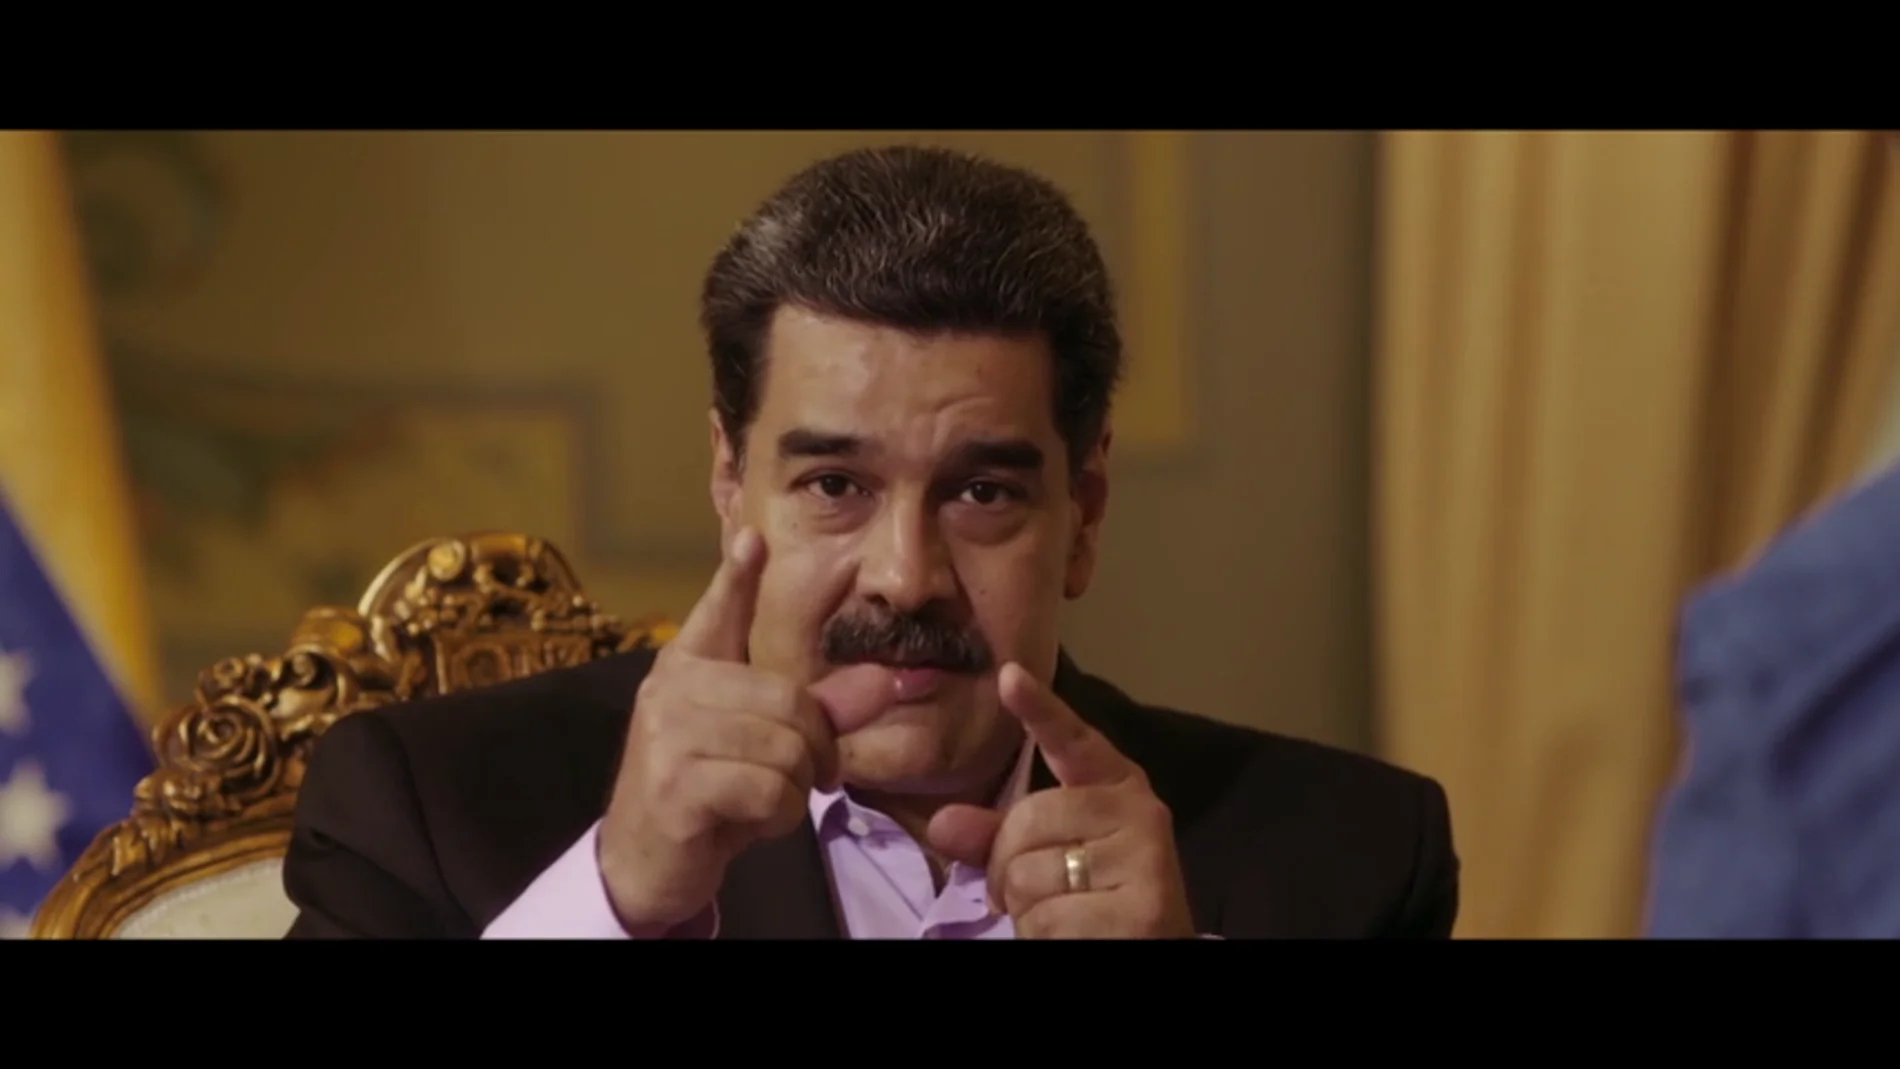 ¿Se plantea Nicolás Maduro retirarse?: "Nos defenderemos con la fuerza de la razón y con la razón de la fuerza"